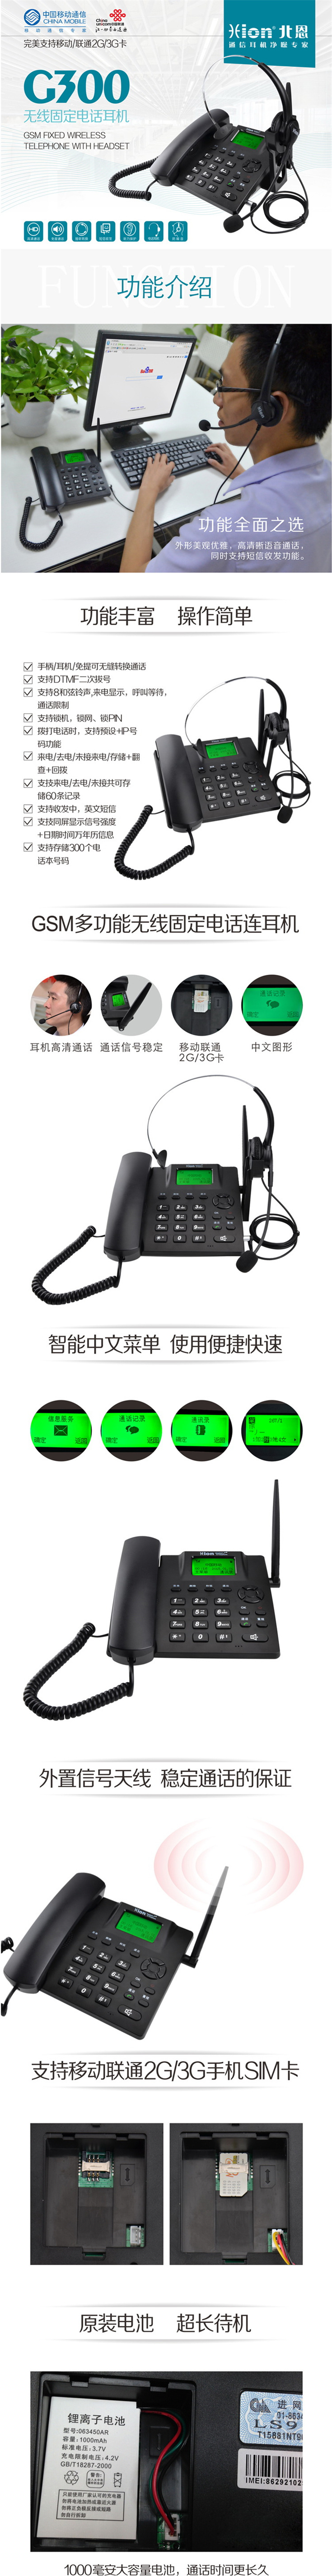 北恩G300无线固定电话耳机 插卡式耳机电话 GSM卡电话耳机